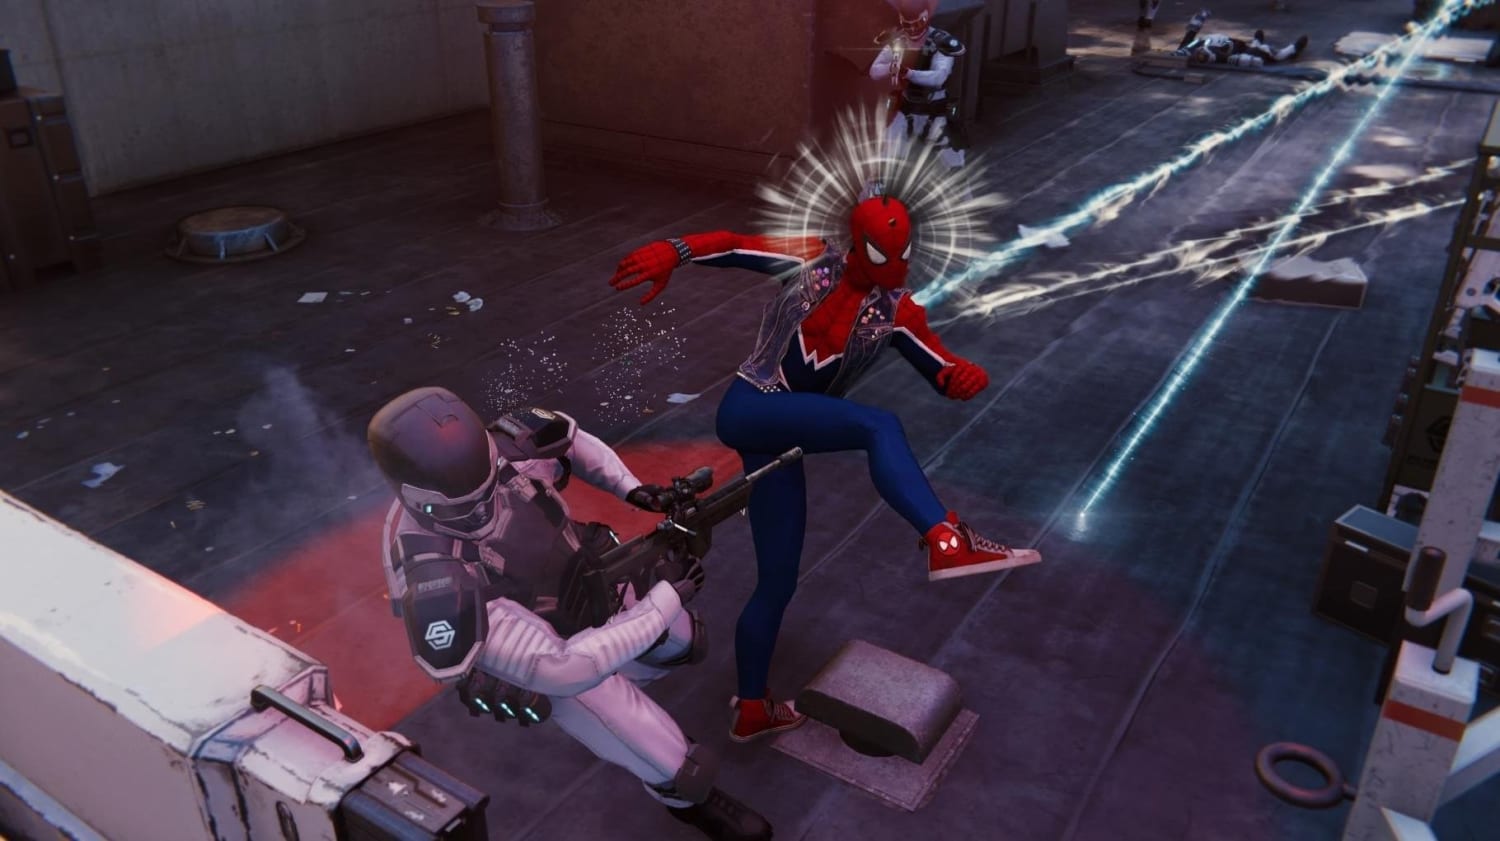 Marvel's Spider-Man 2: COSA DOVETE SAPERE sull'esclusiva PS5 